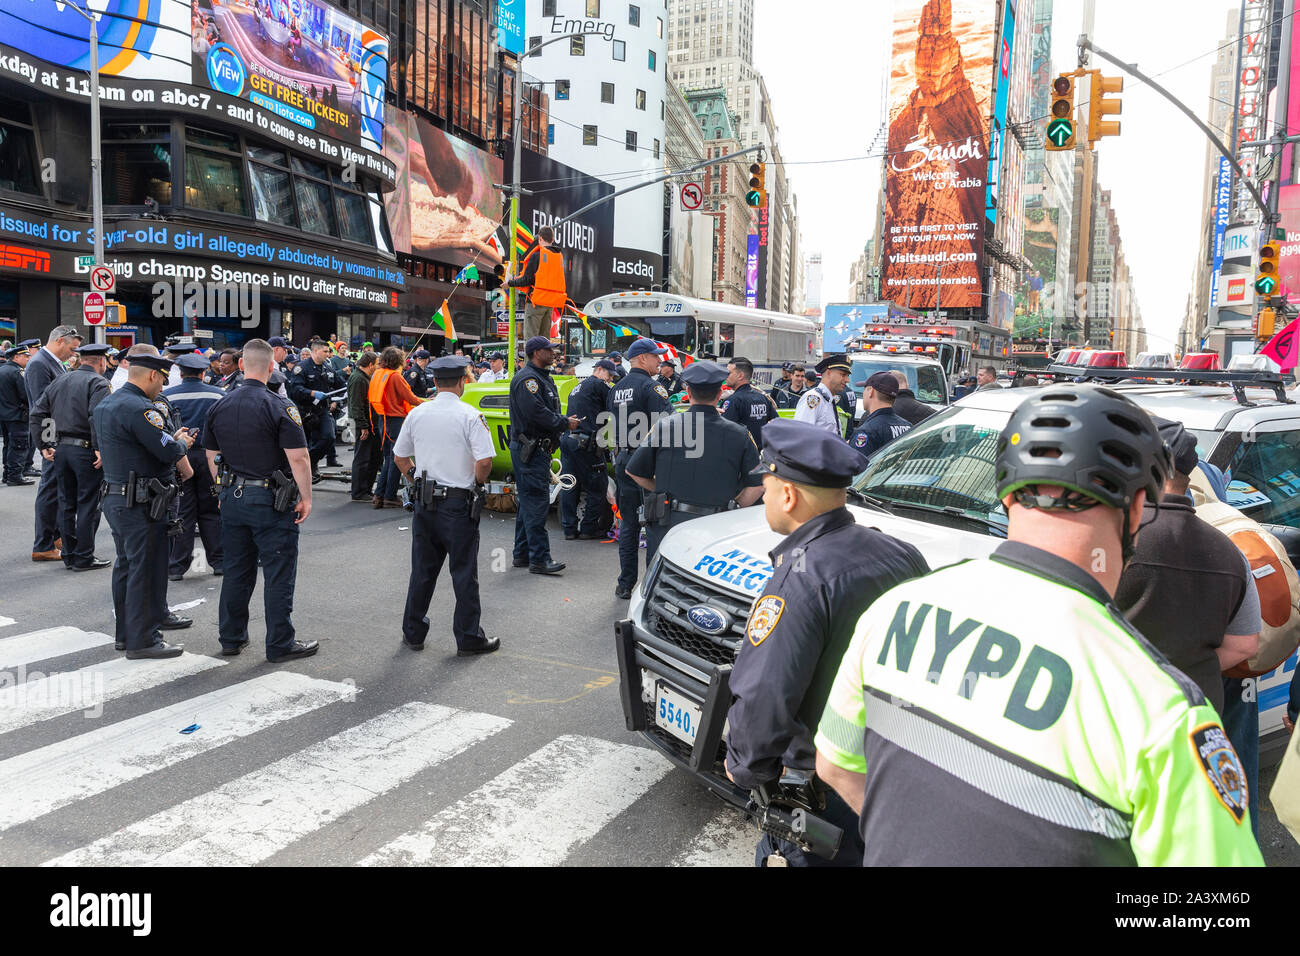 New York, NY - 10 octobre 2019 : Les membres du groupe de rébellion Extinction étapes protester sur Times Square bloque la circulation avec bateau de fortune. Plus de 60 personnes ont été arrêtées pour conduite désordonnée Banque D'Images